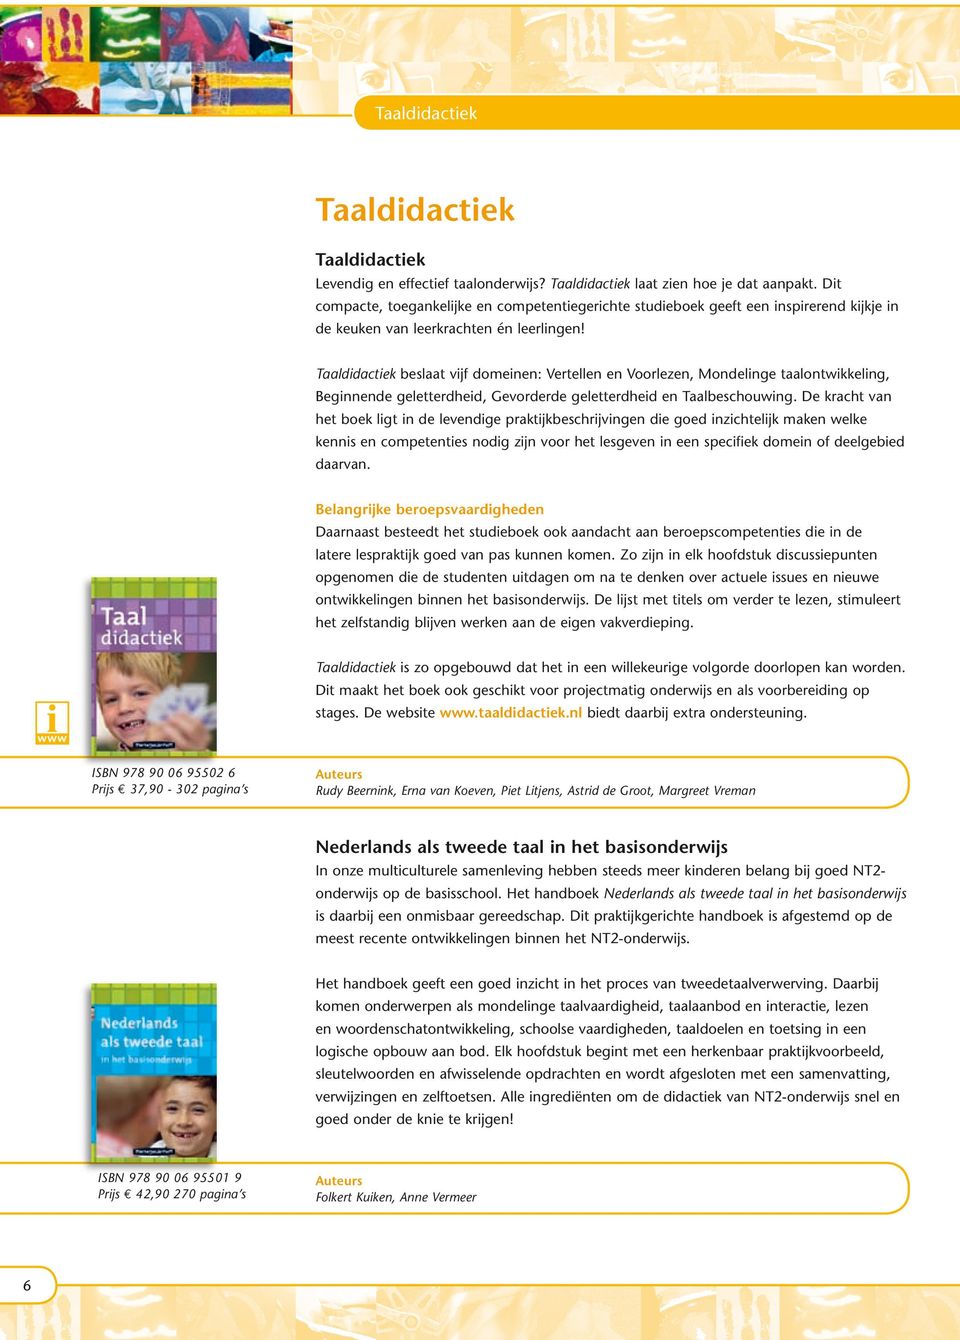 Taaldidactiek beslaat vijf domeinen: Vertellen en Voorlezen, Mondelinge taalontwikkeling, Beginnende geletterdheid, Gevorderde geletterdheid en Taalbeschouwing.